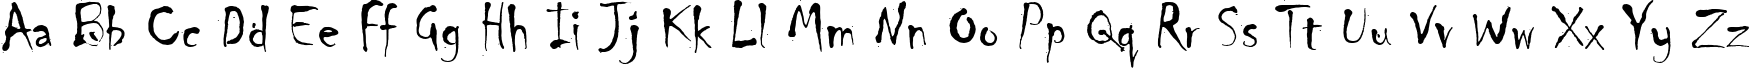 Пример написания английского алфавита шрифтом Chiller